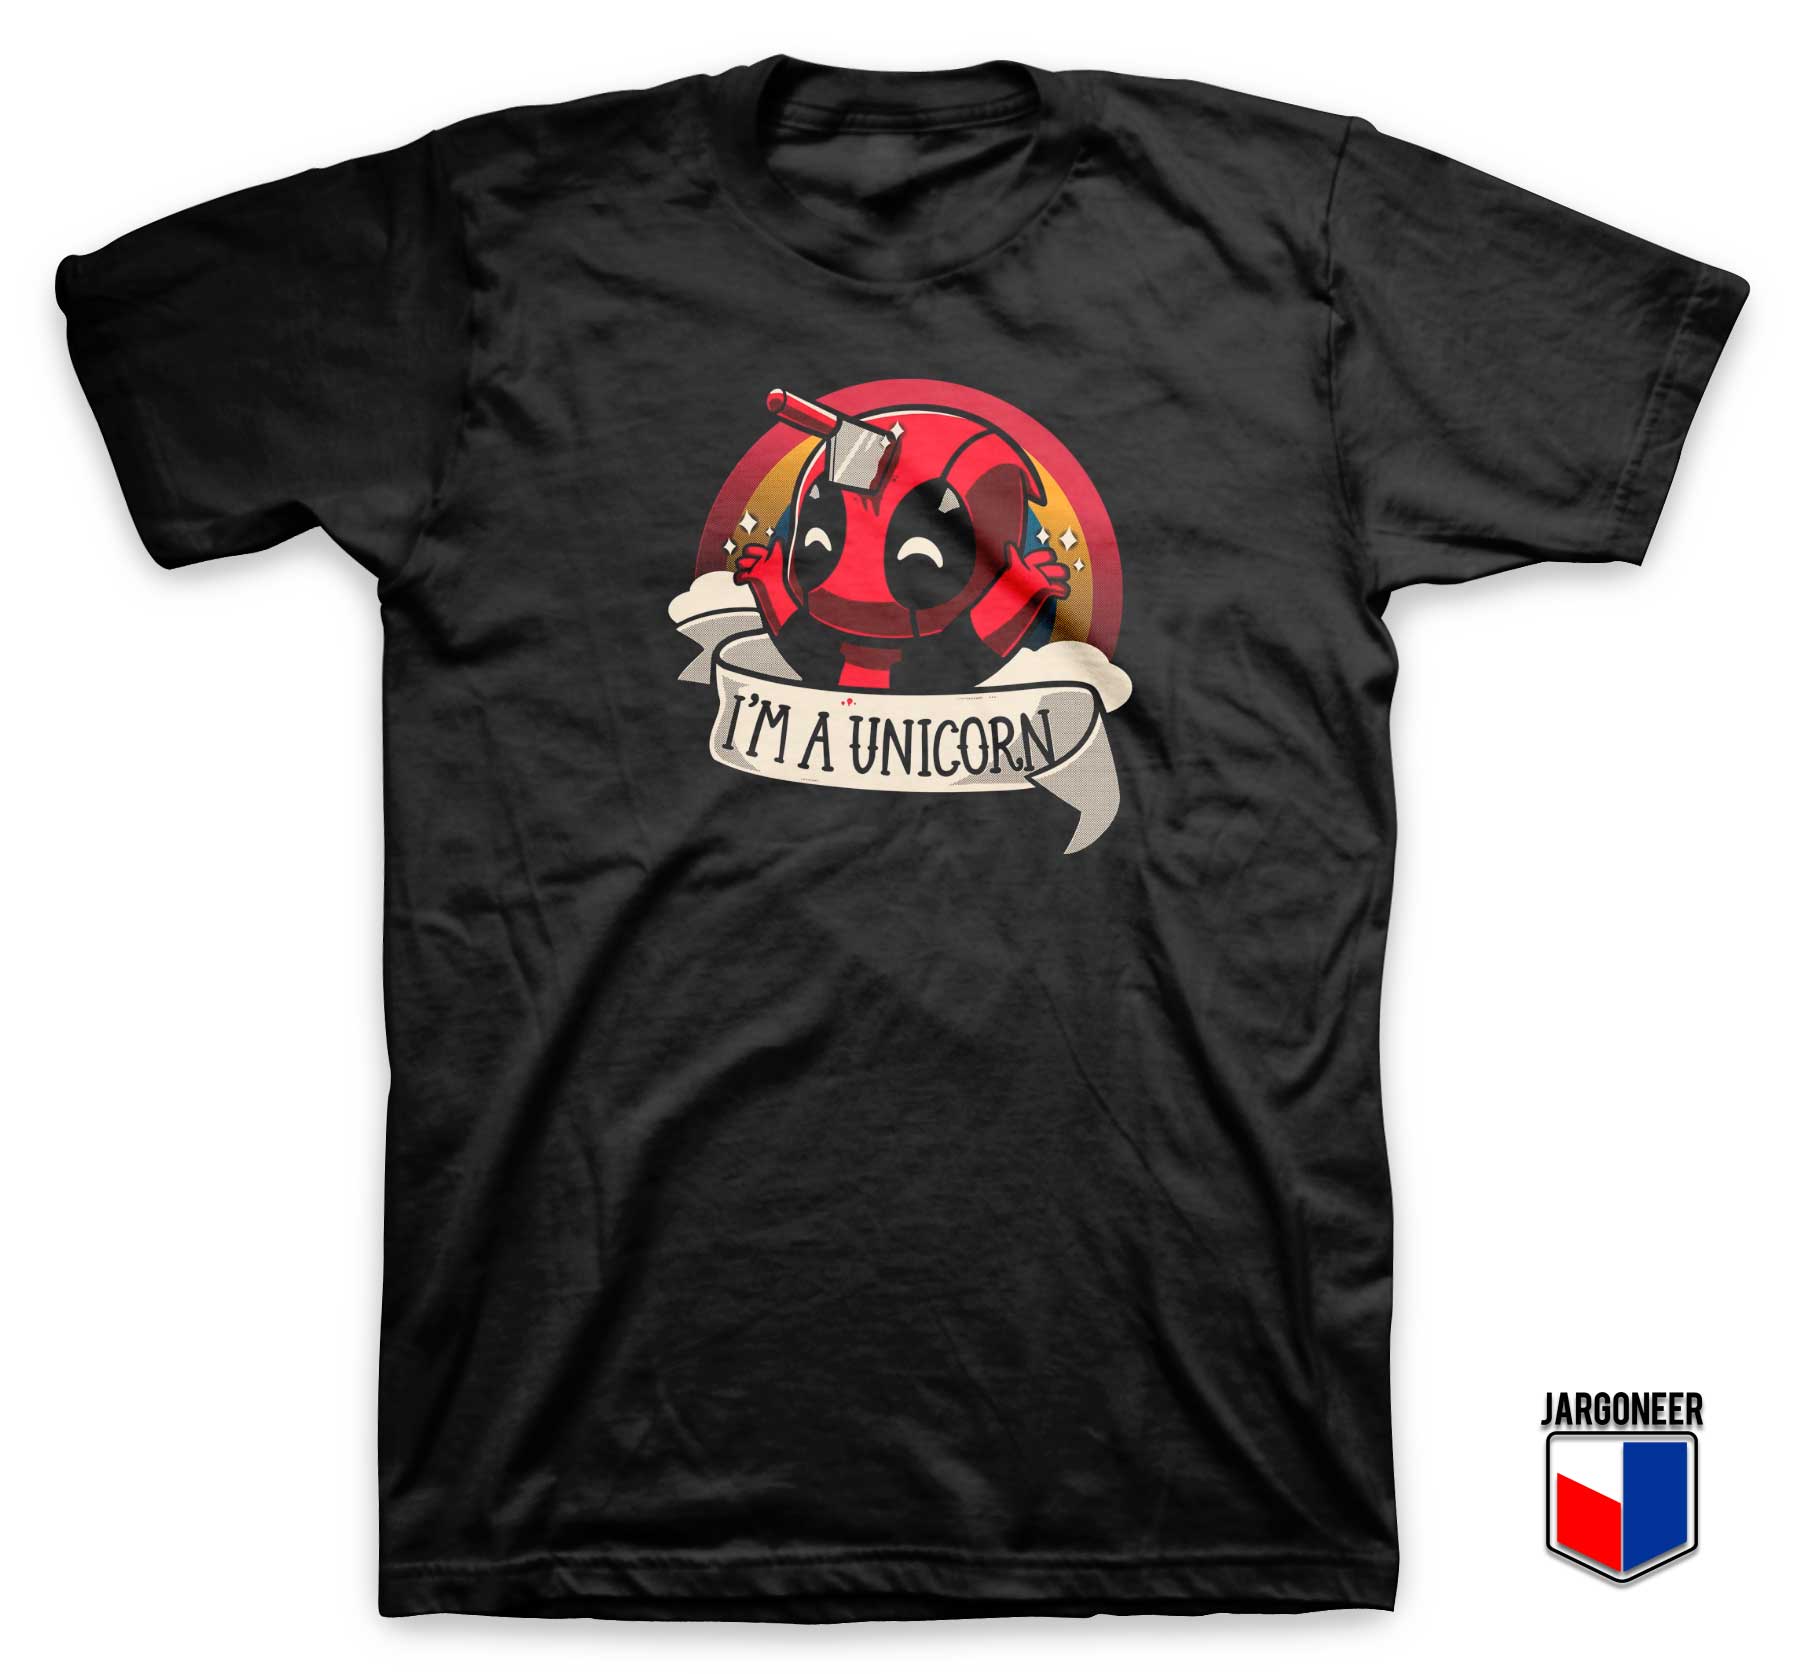 Deadpool Is Unicorn T Shirt - Shop Unique Graphic Cool Shirt Designs